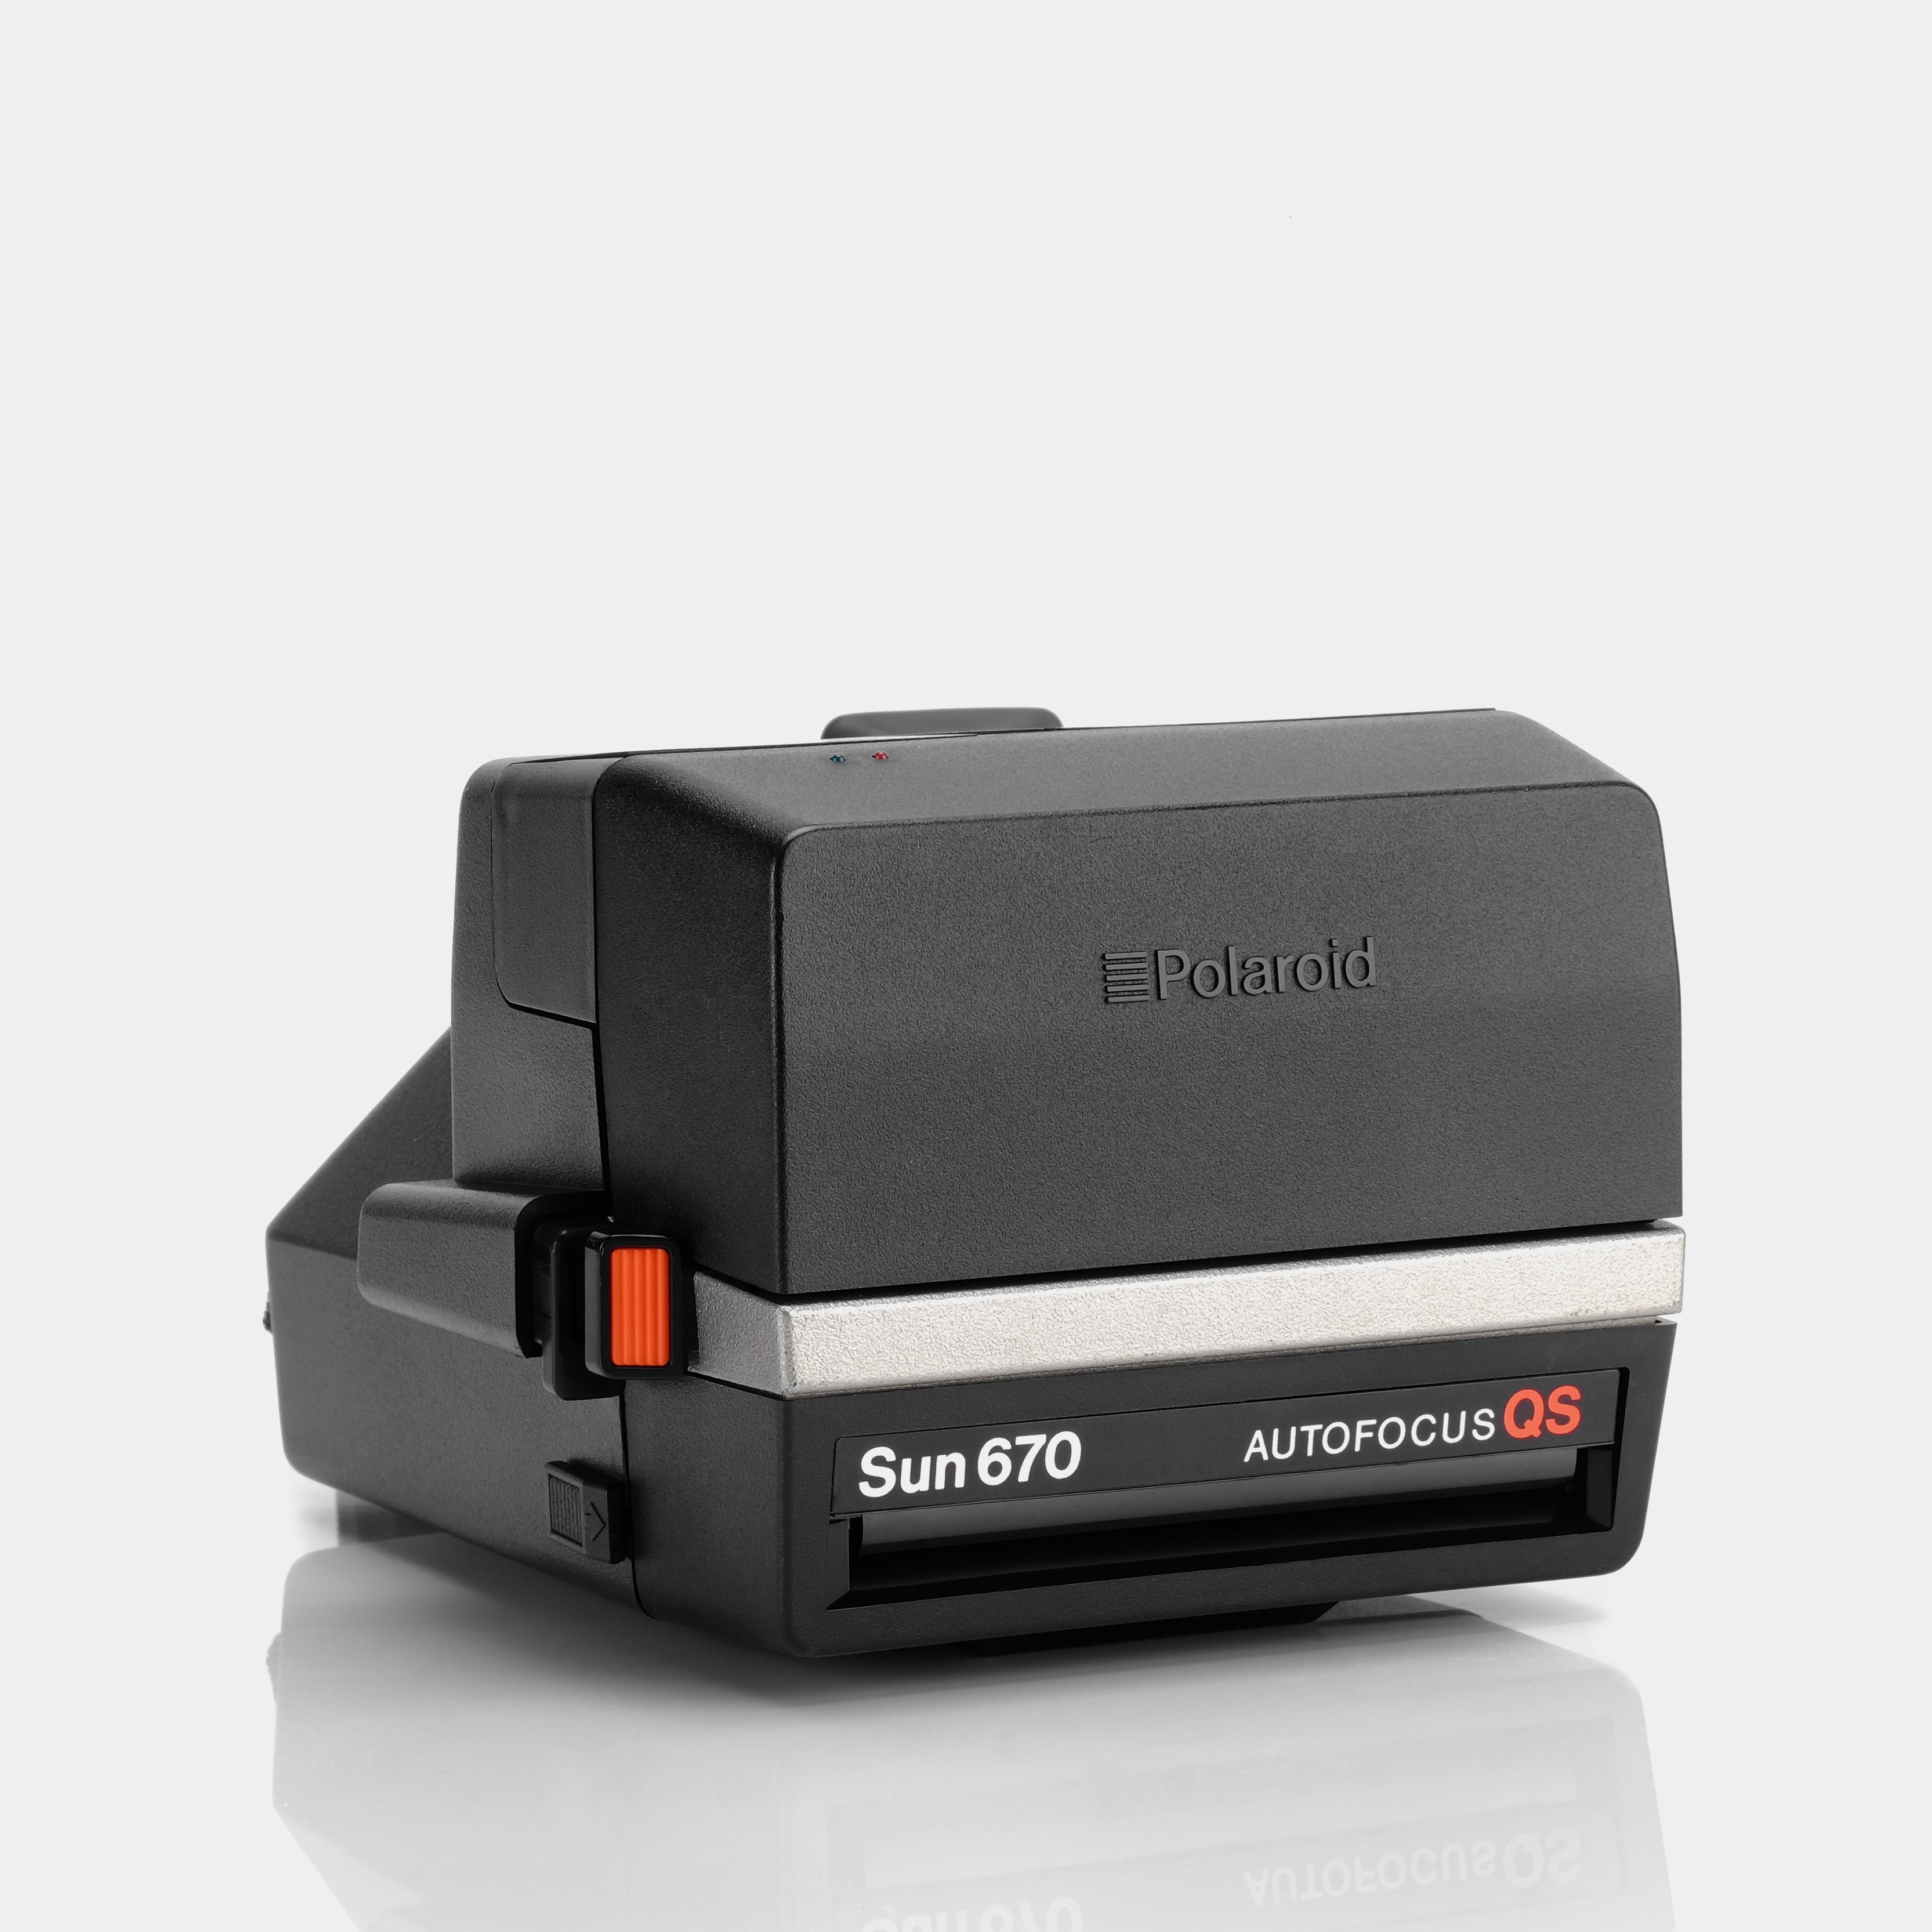 Polaroid 600 Sun670 Autofocus QS Instant Film Camera